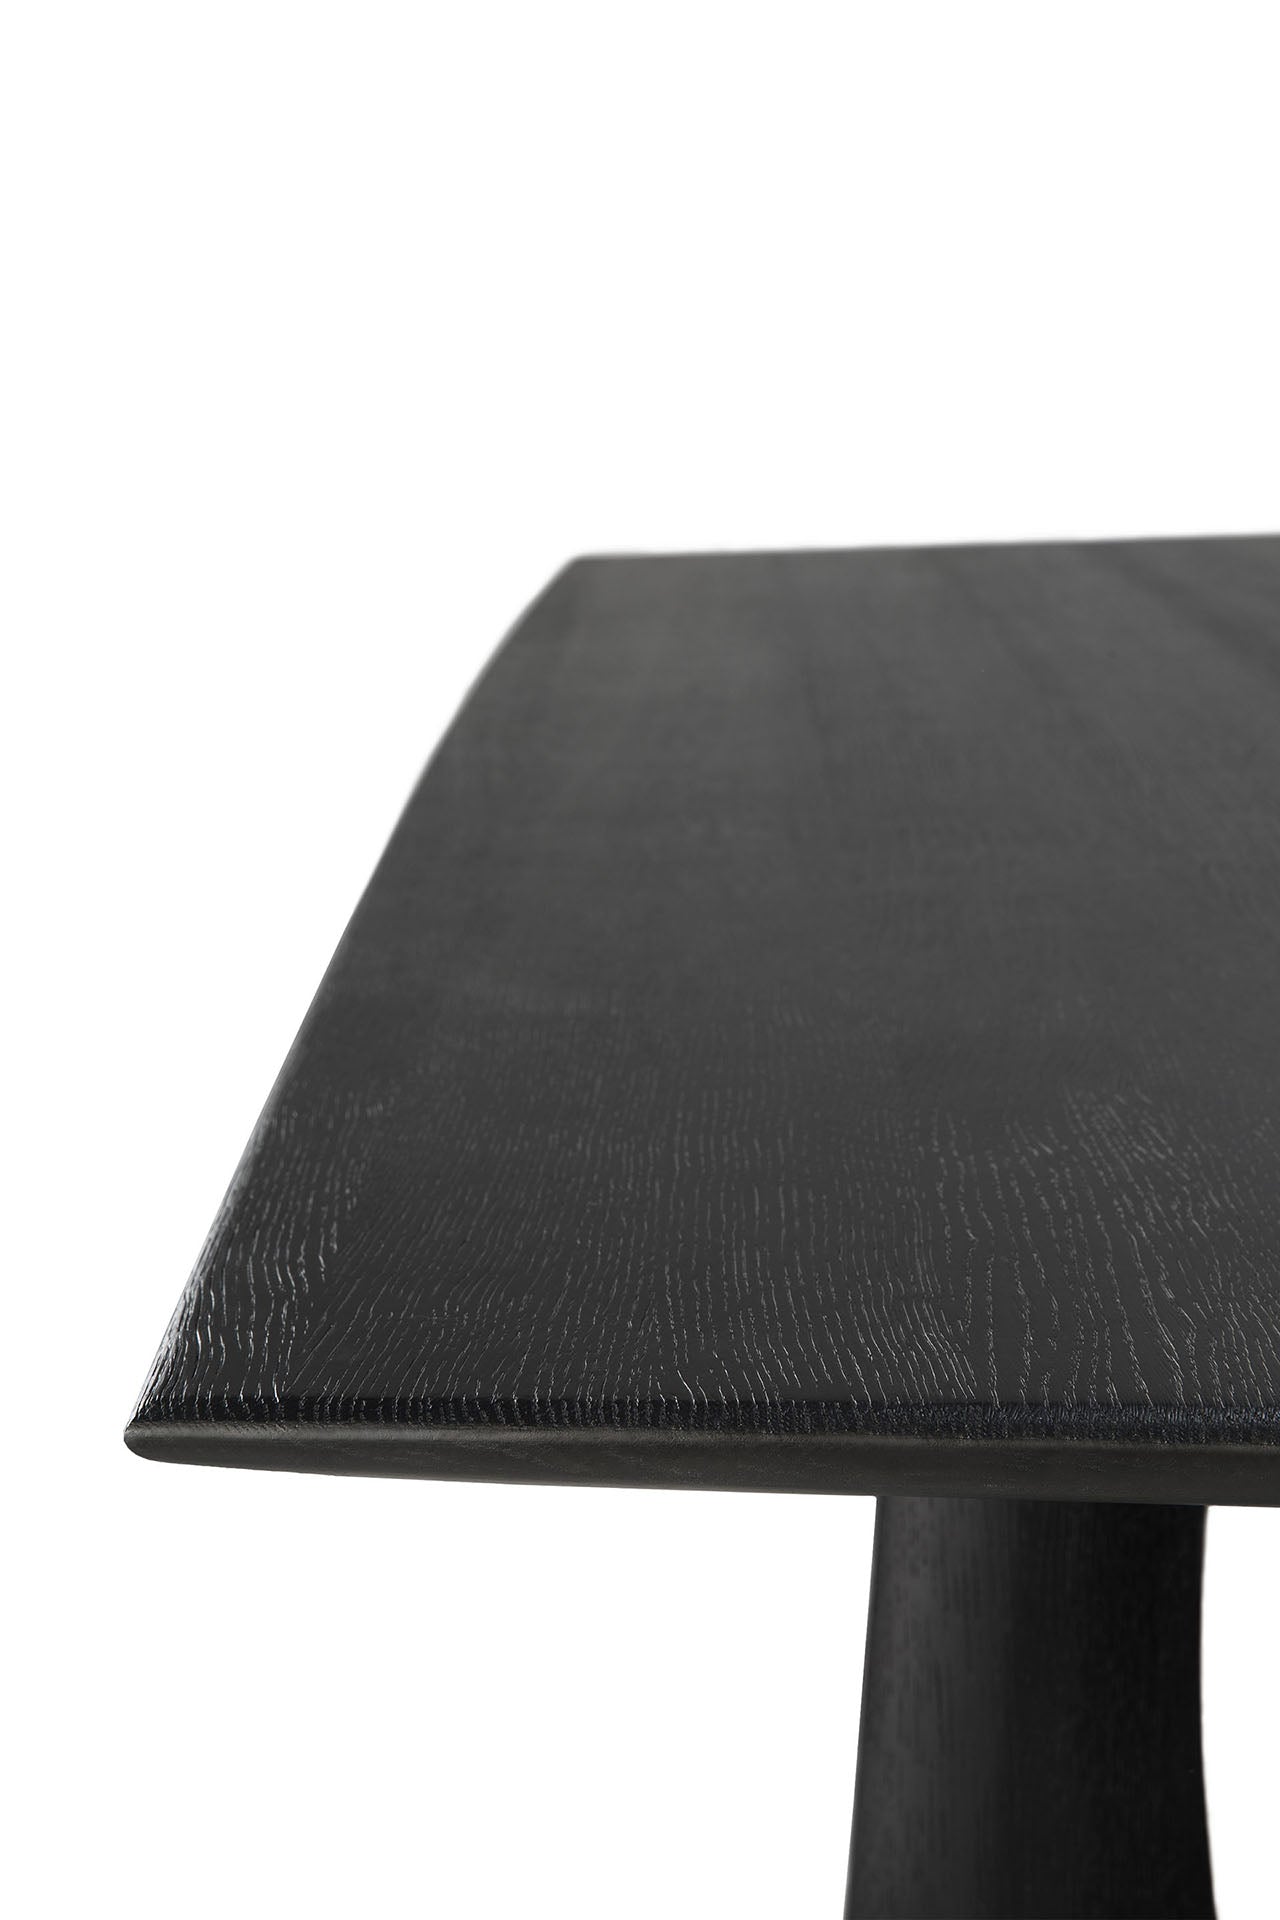 Geometric Black Oak Dining Table, 87&quot;